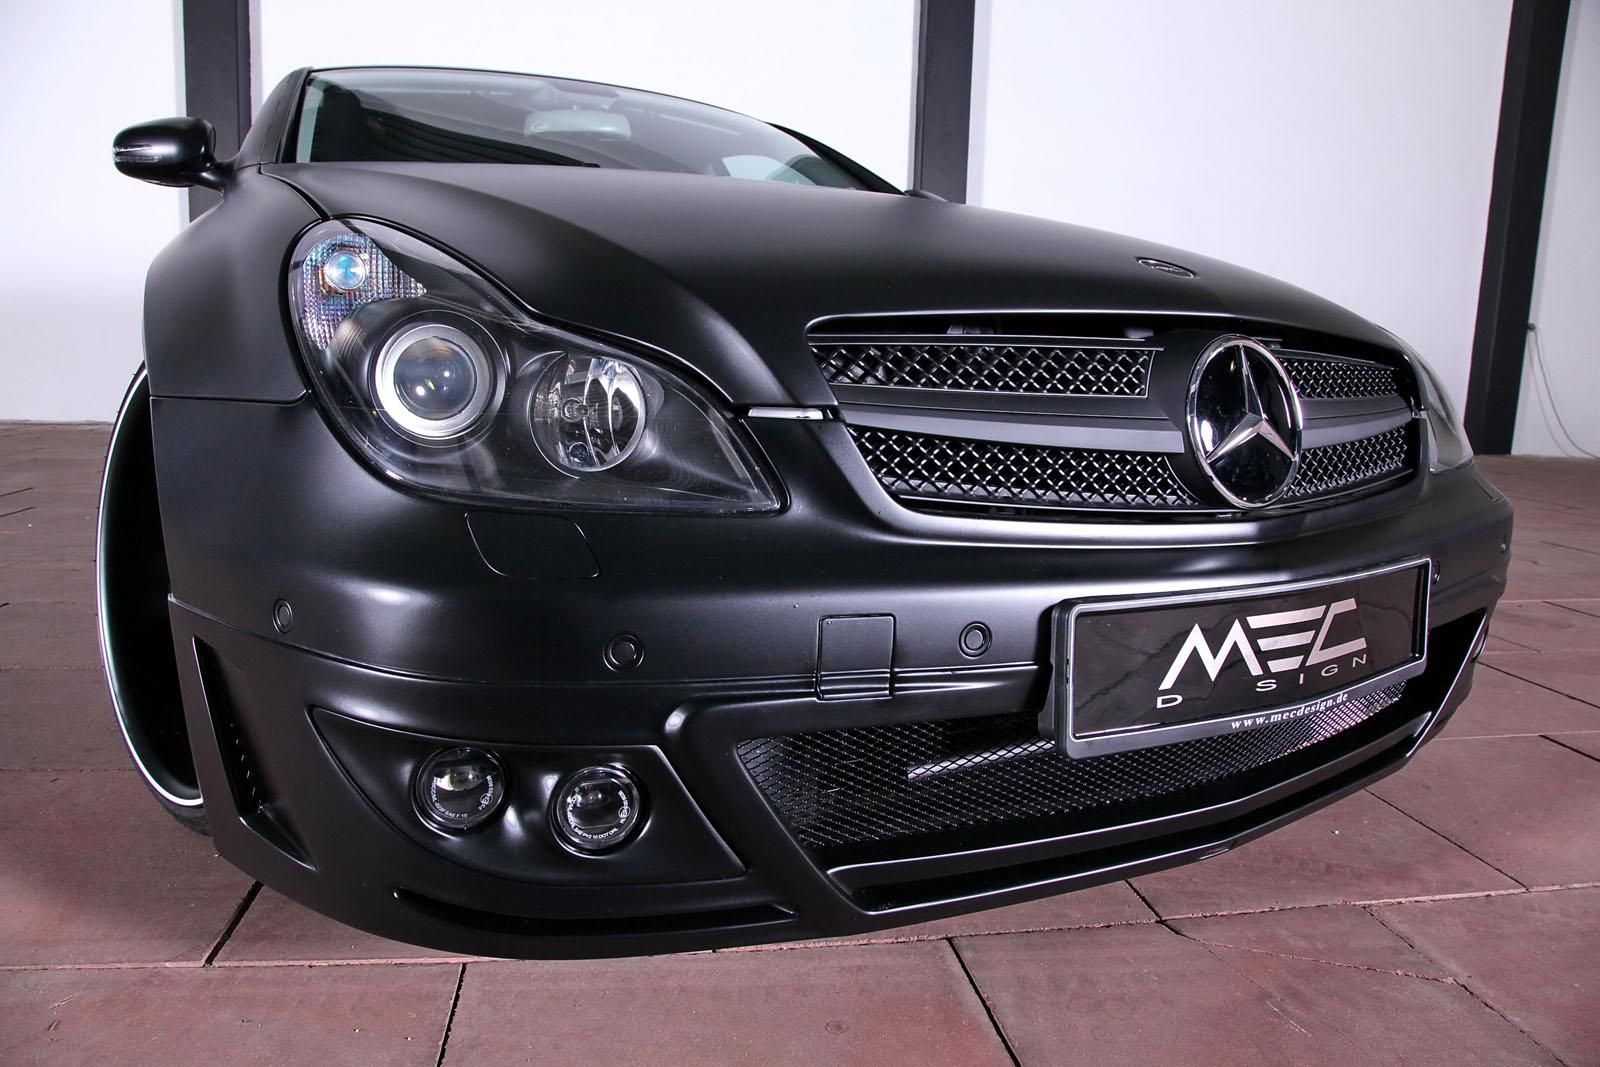 2011 Mercedes CLS 500 MEC Design